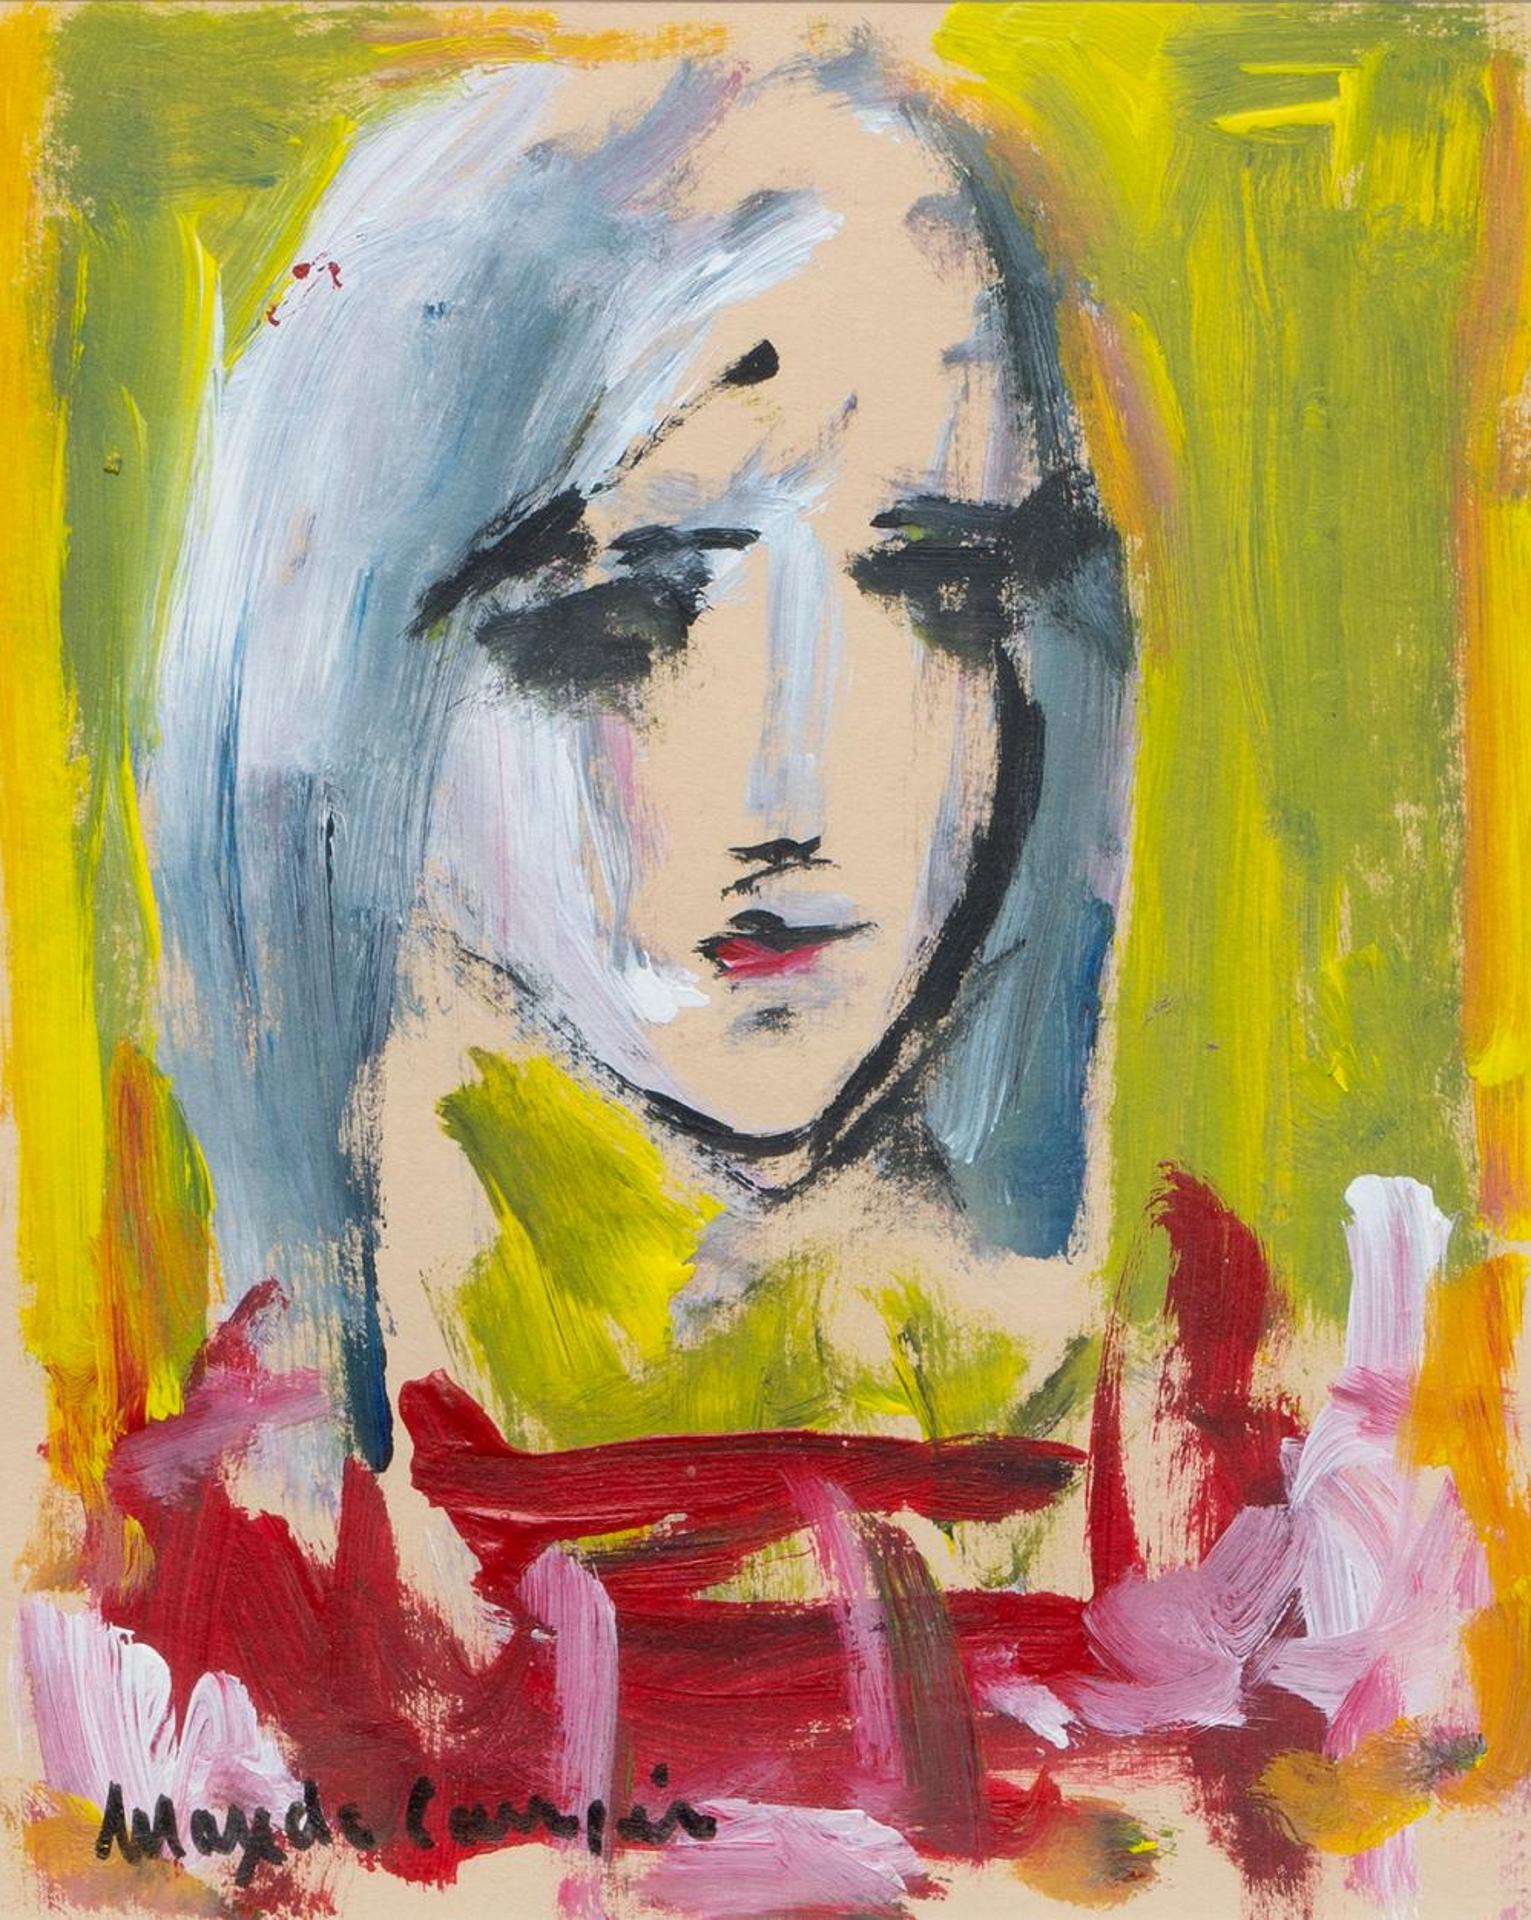 Max de Carrier - Untitled - Portrait of a Woman